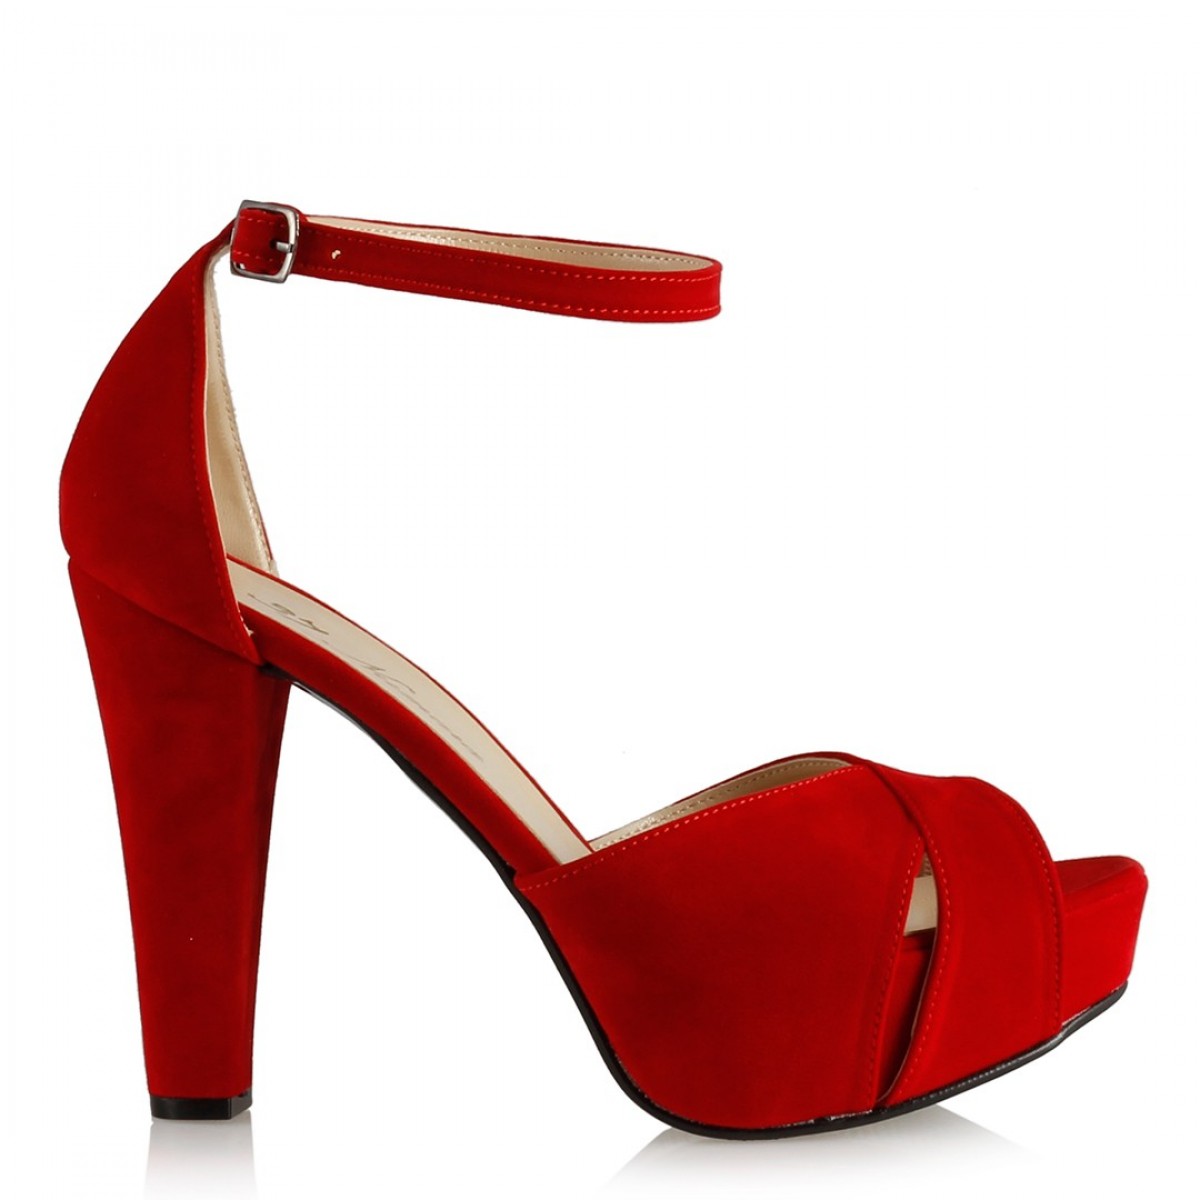 Platform Ayakkabı Modelleri Kırmızı Süet